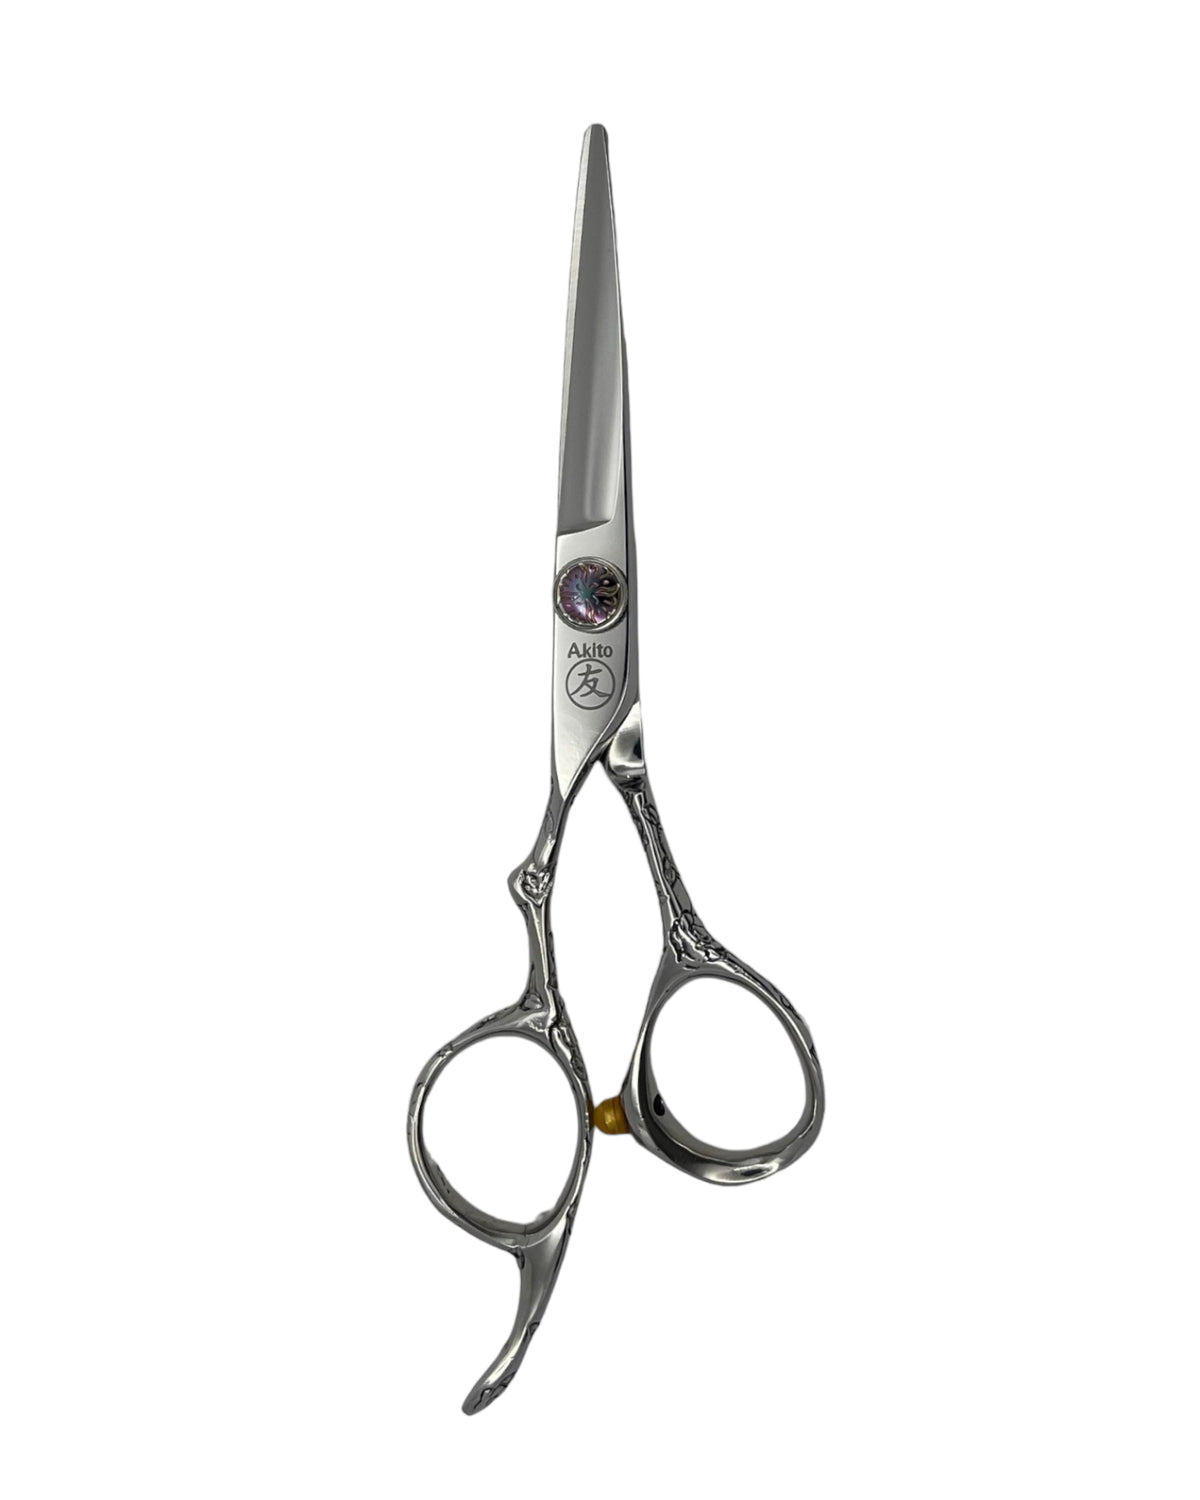 Sensei left handed hairdressing scissors in 5.5